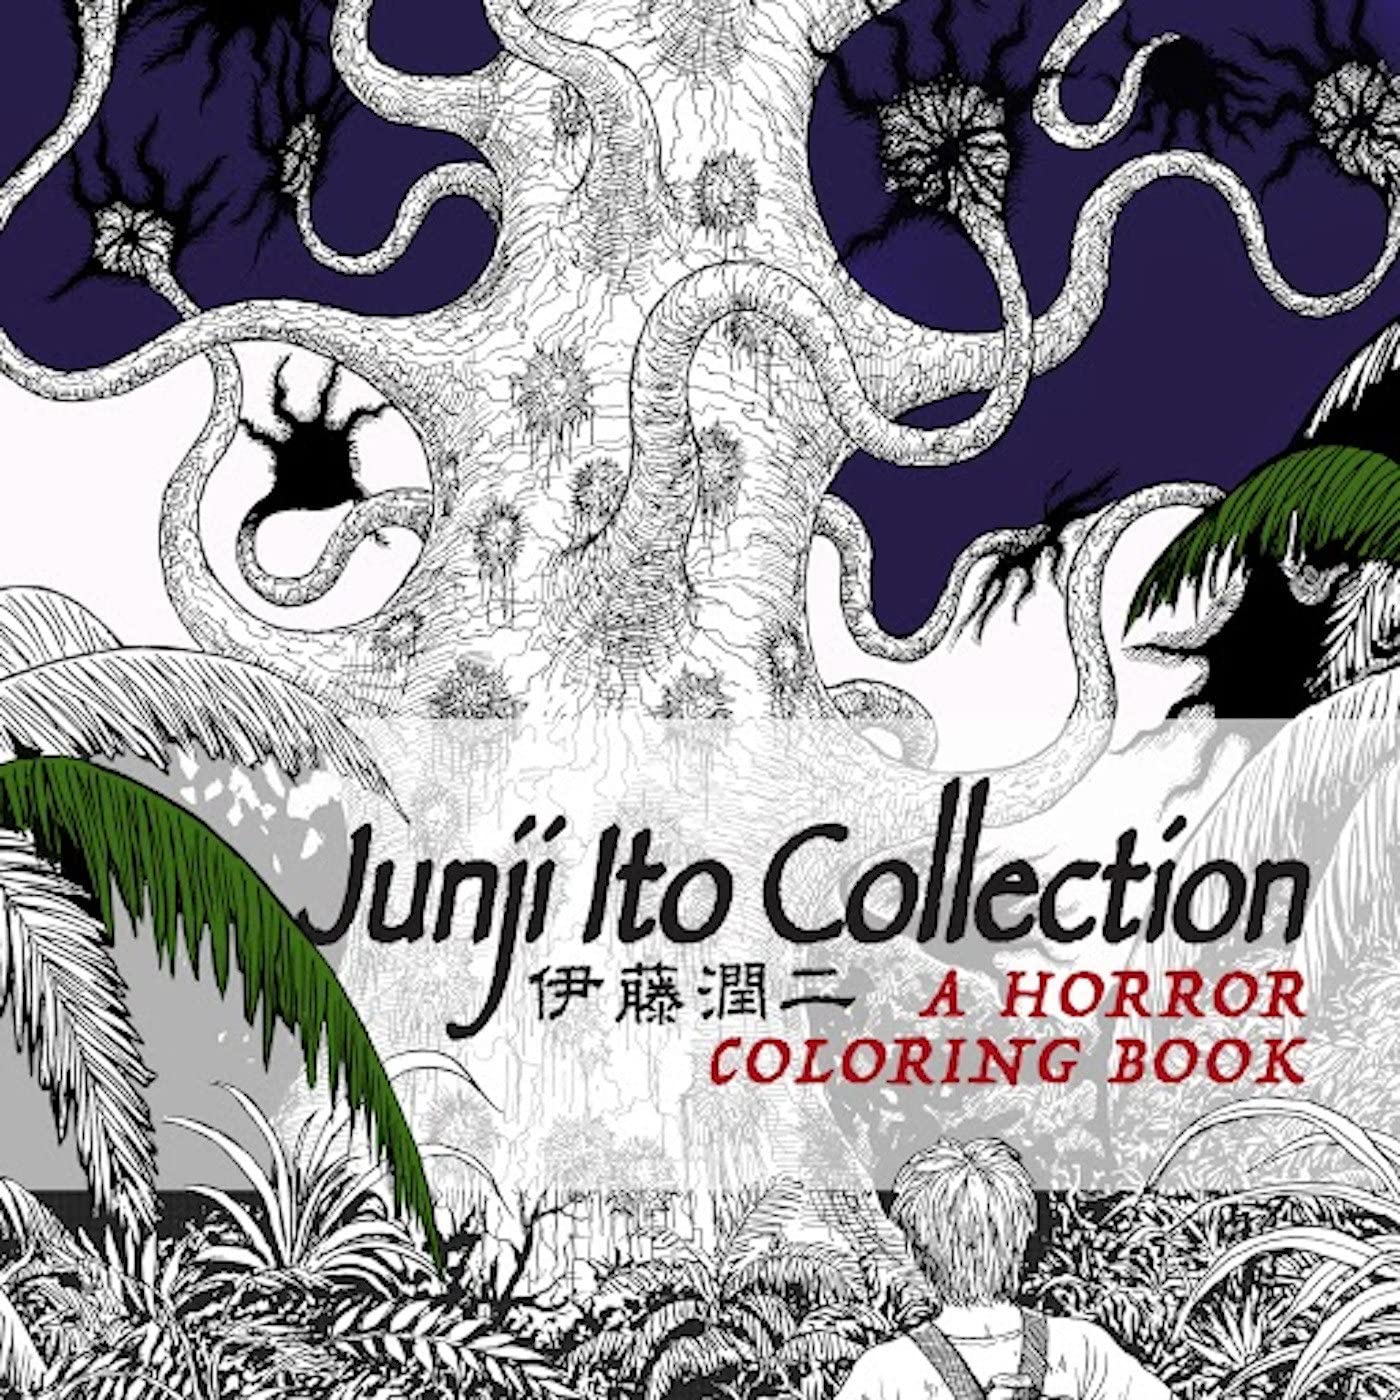 Junji Ito Collection: A Horror Colouring Book